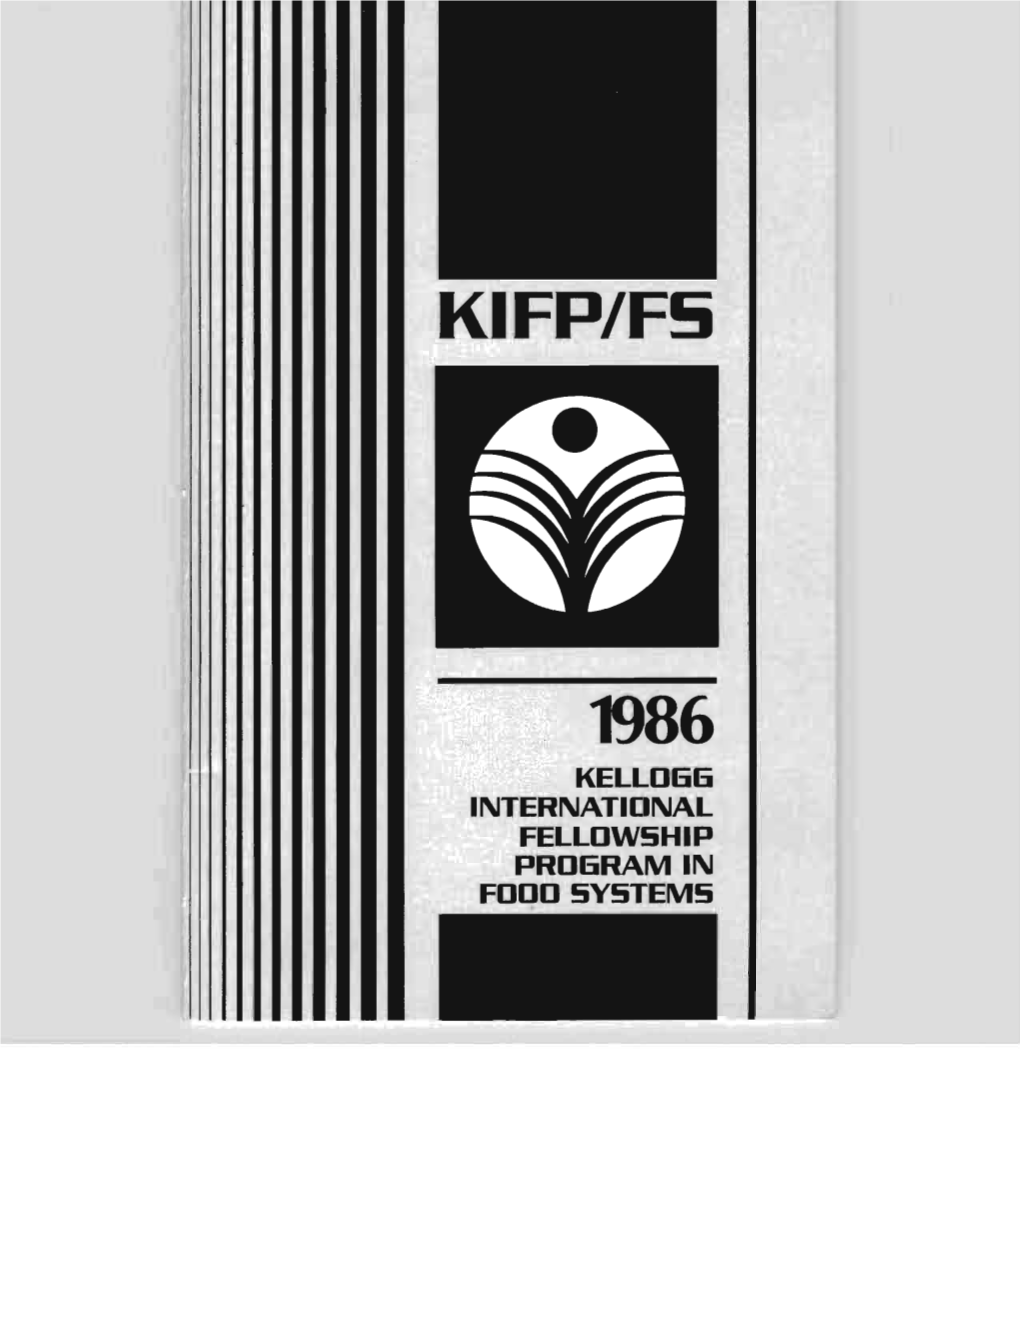 KIFP/FS: a Brochure Presenting Project Fellows